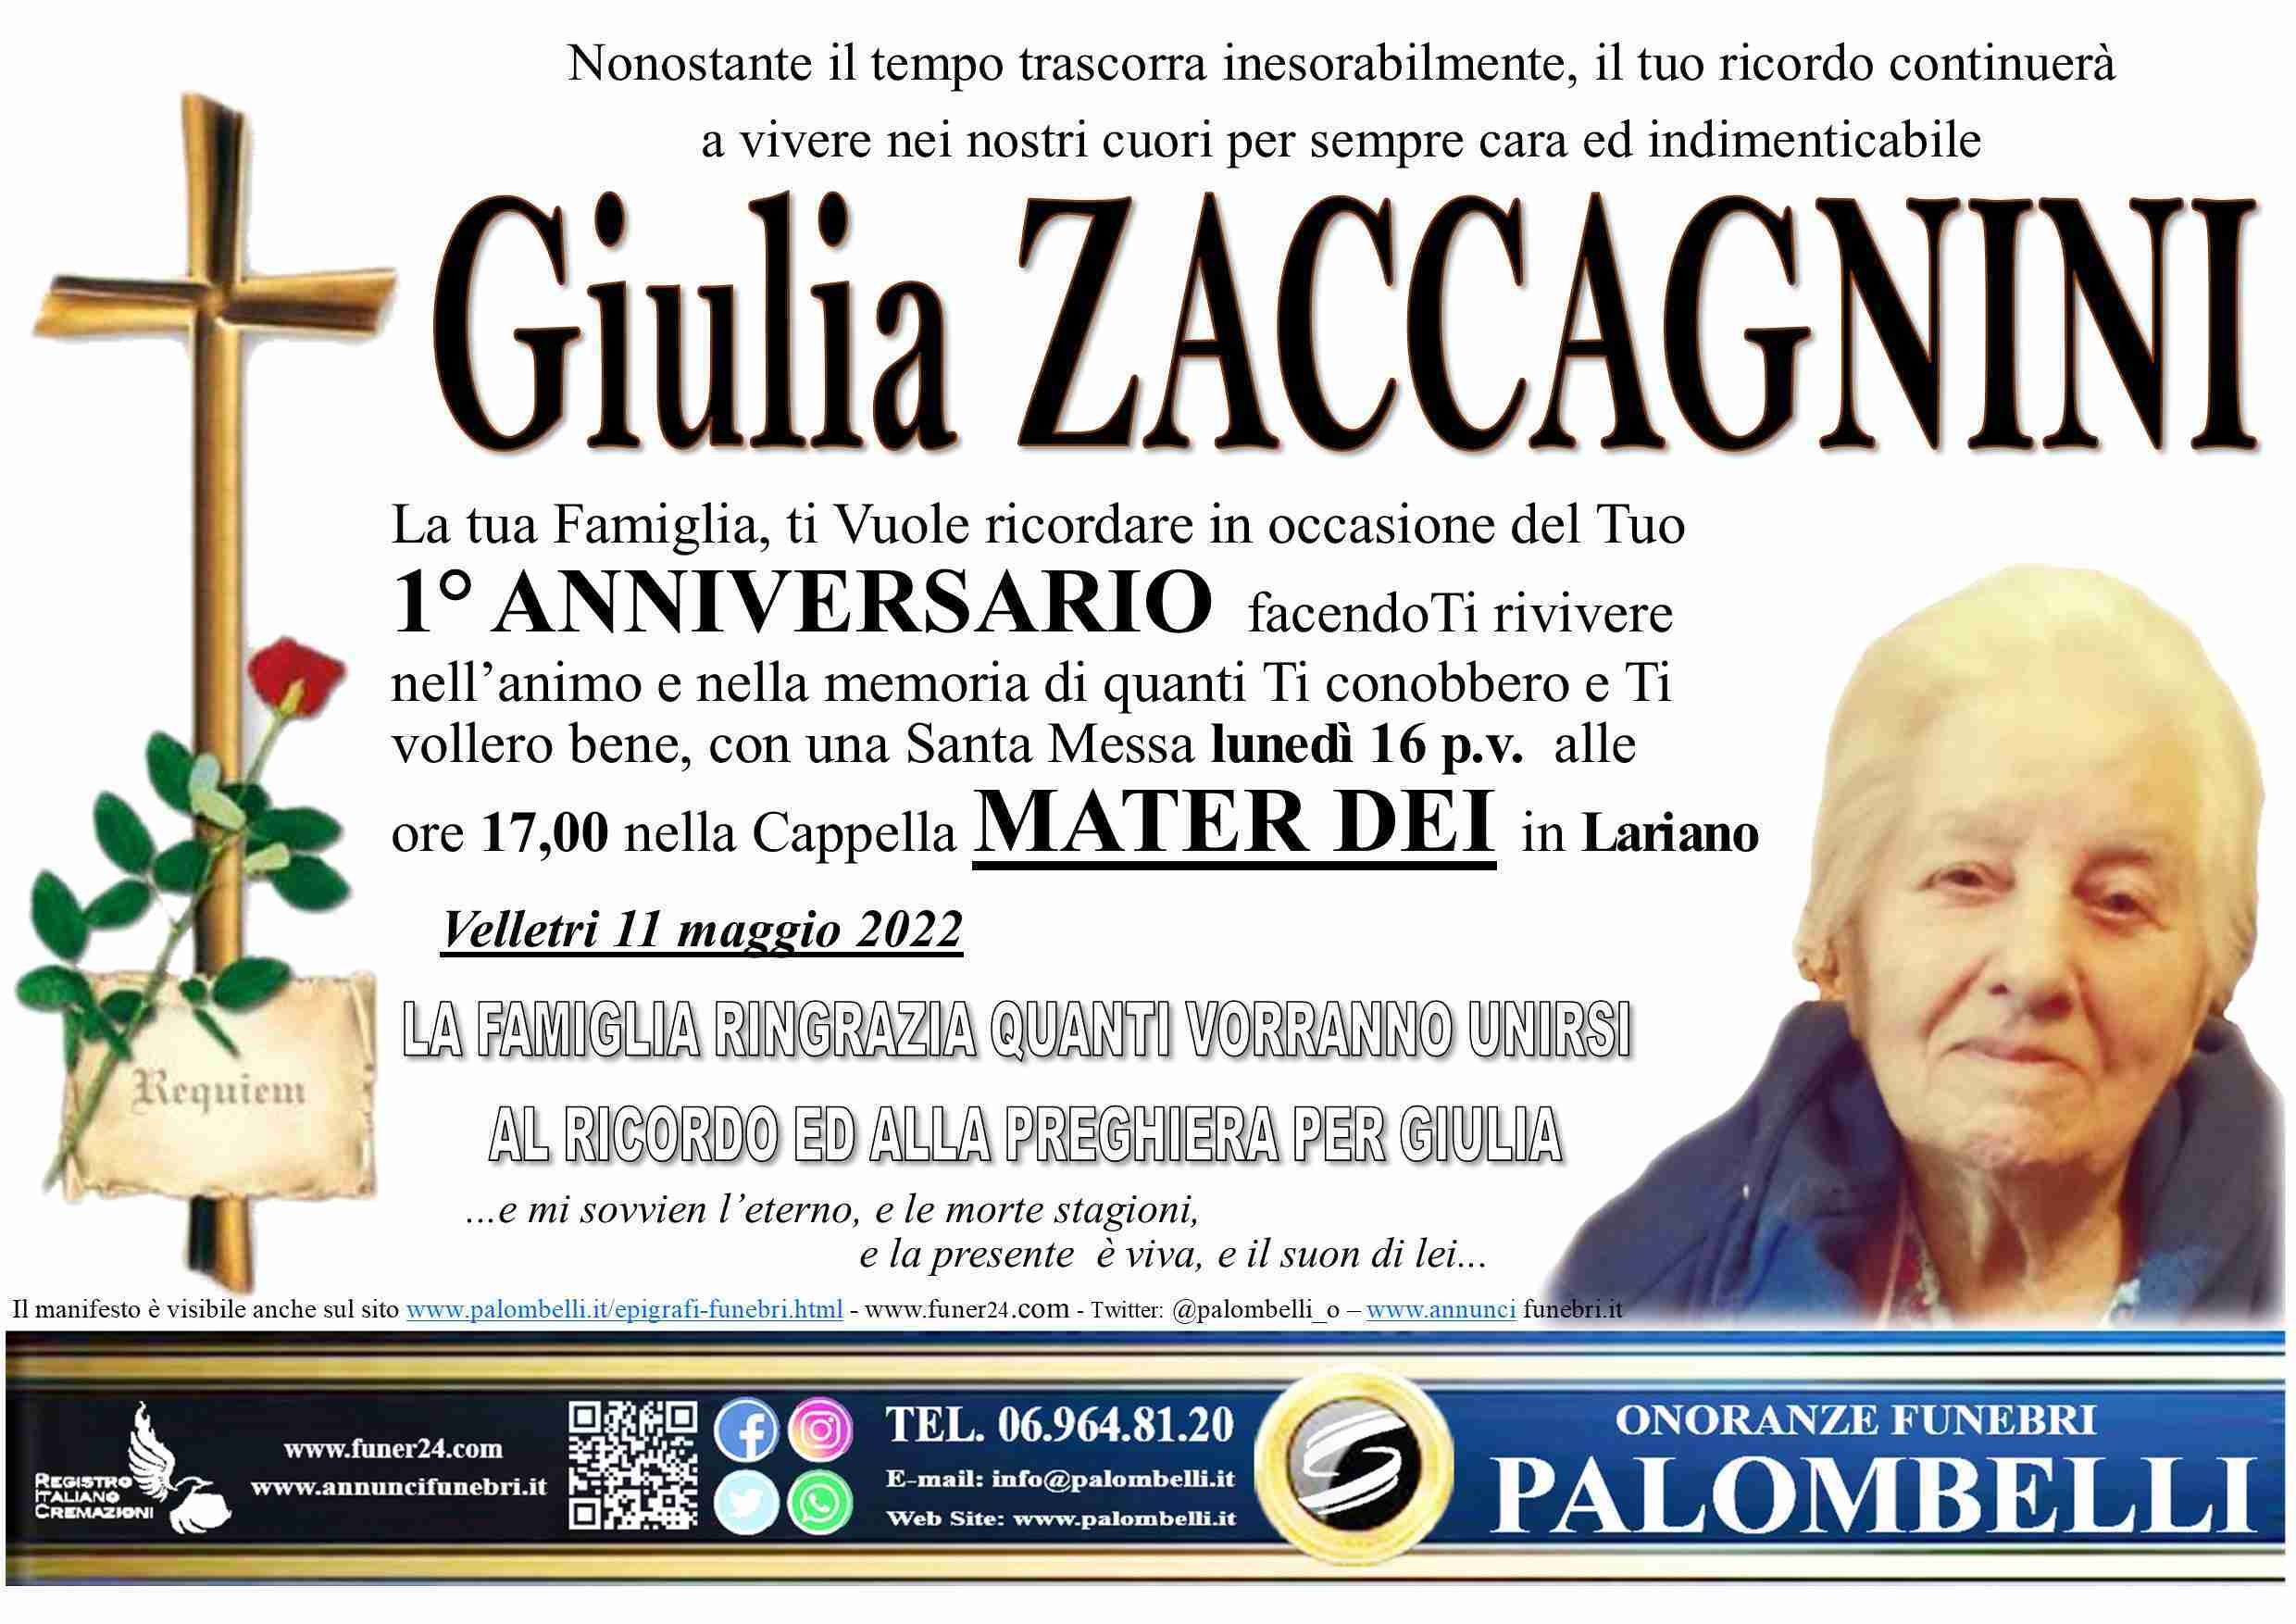 Giulia Zaccagnini